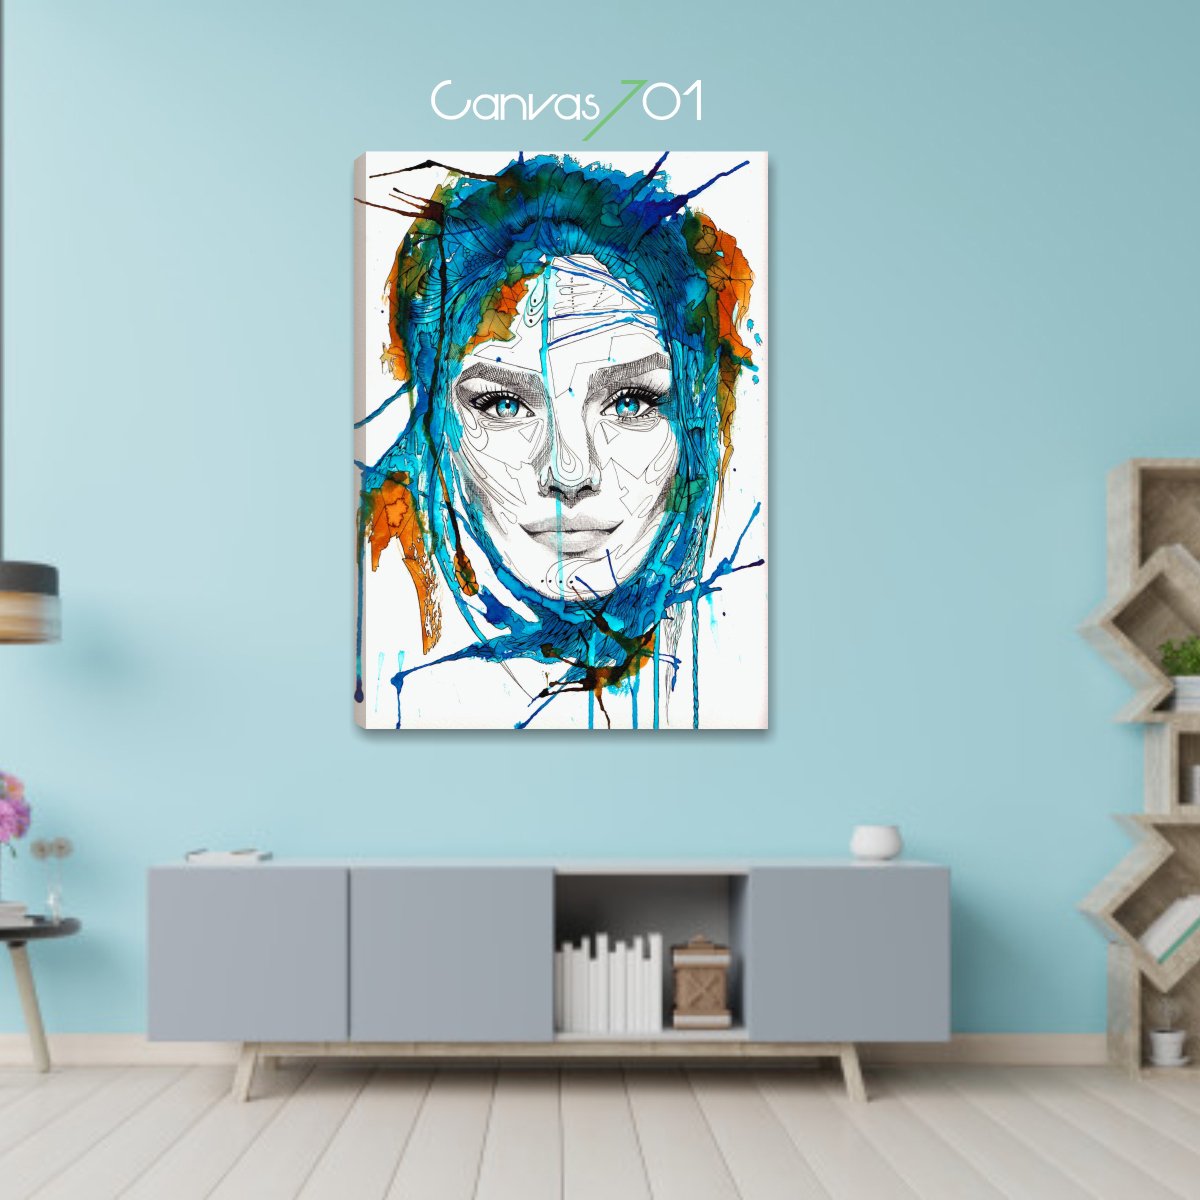 Canvas701 | Yağlı Boya Renkli Kadın Kanvas Tablo